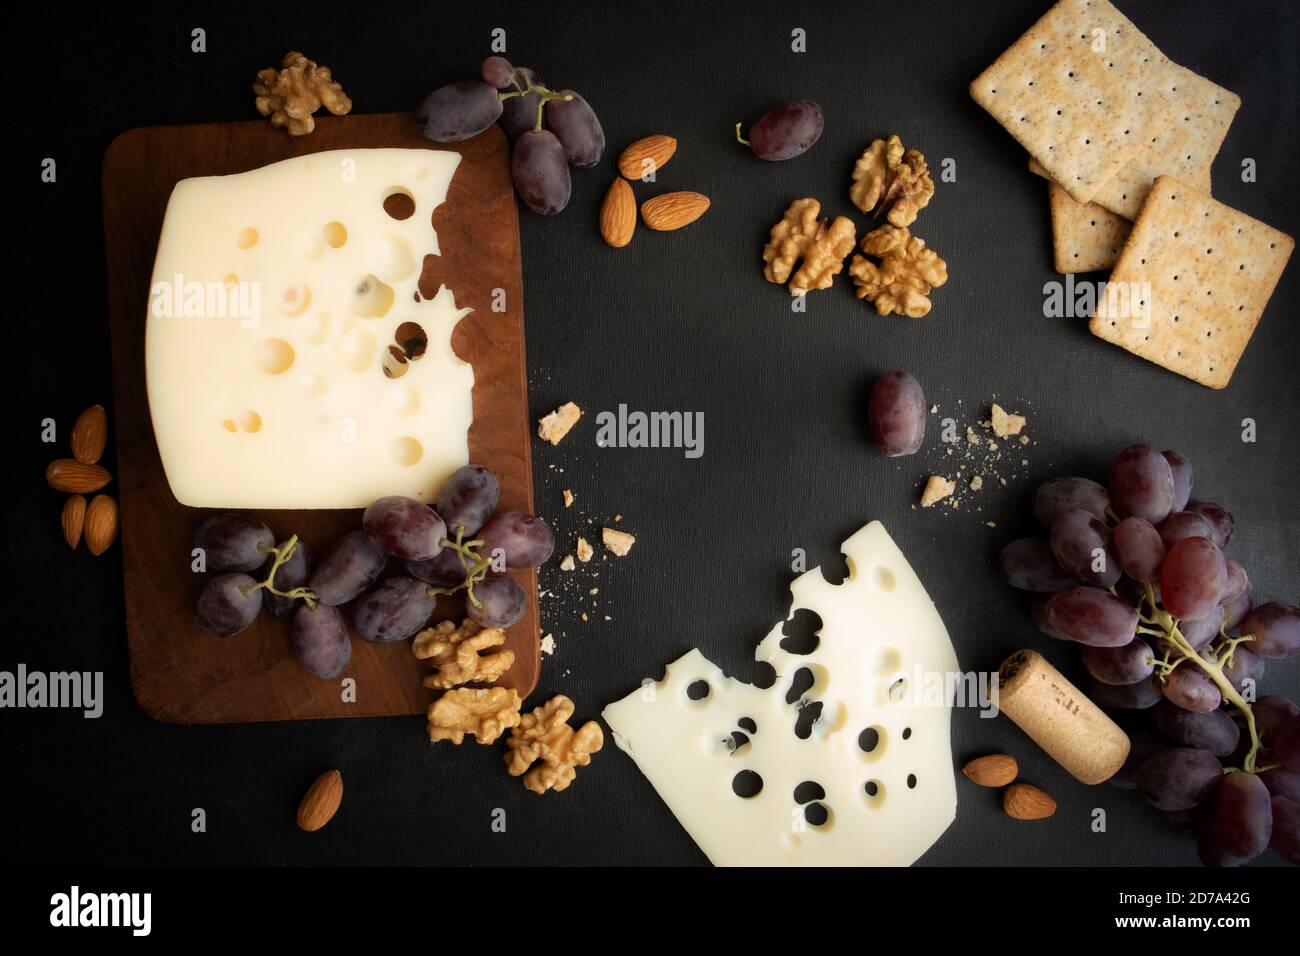 Maasdam Käse, Walnuss, Kekse und Beeren von lila Trauben auf einem dunklen Hintergrund mit Platz für Text. Poster. Stockfoto